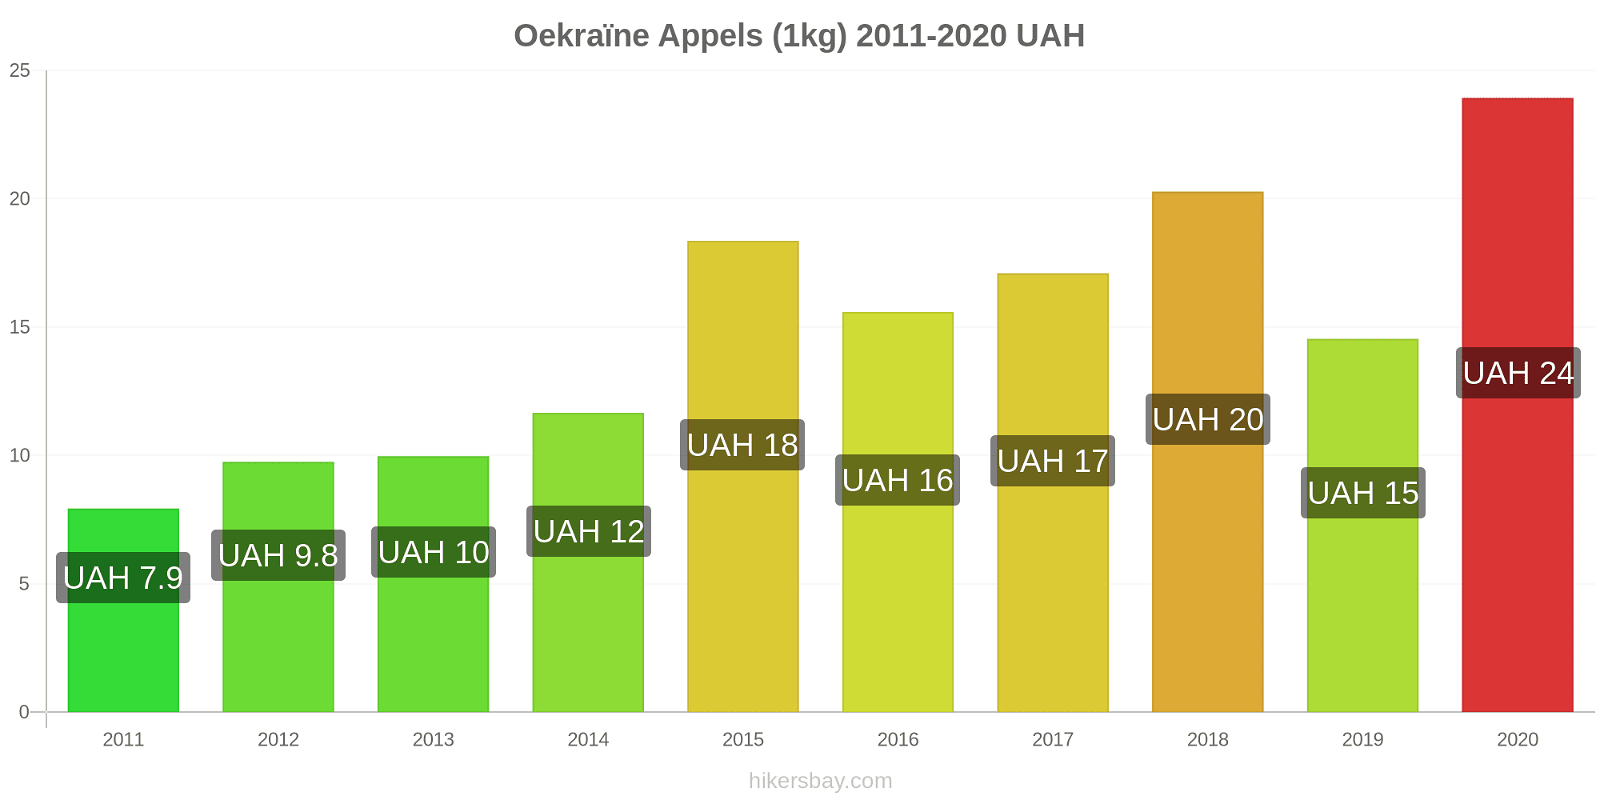 Oekraïne prijswijzigingen Appels (1kg) hikersbay.com